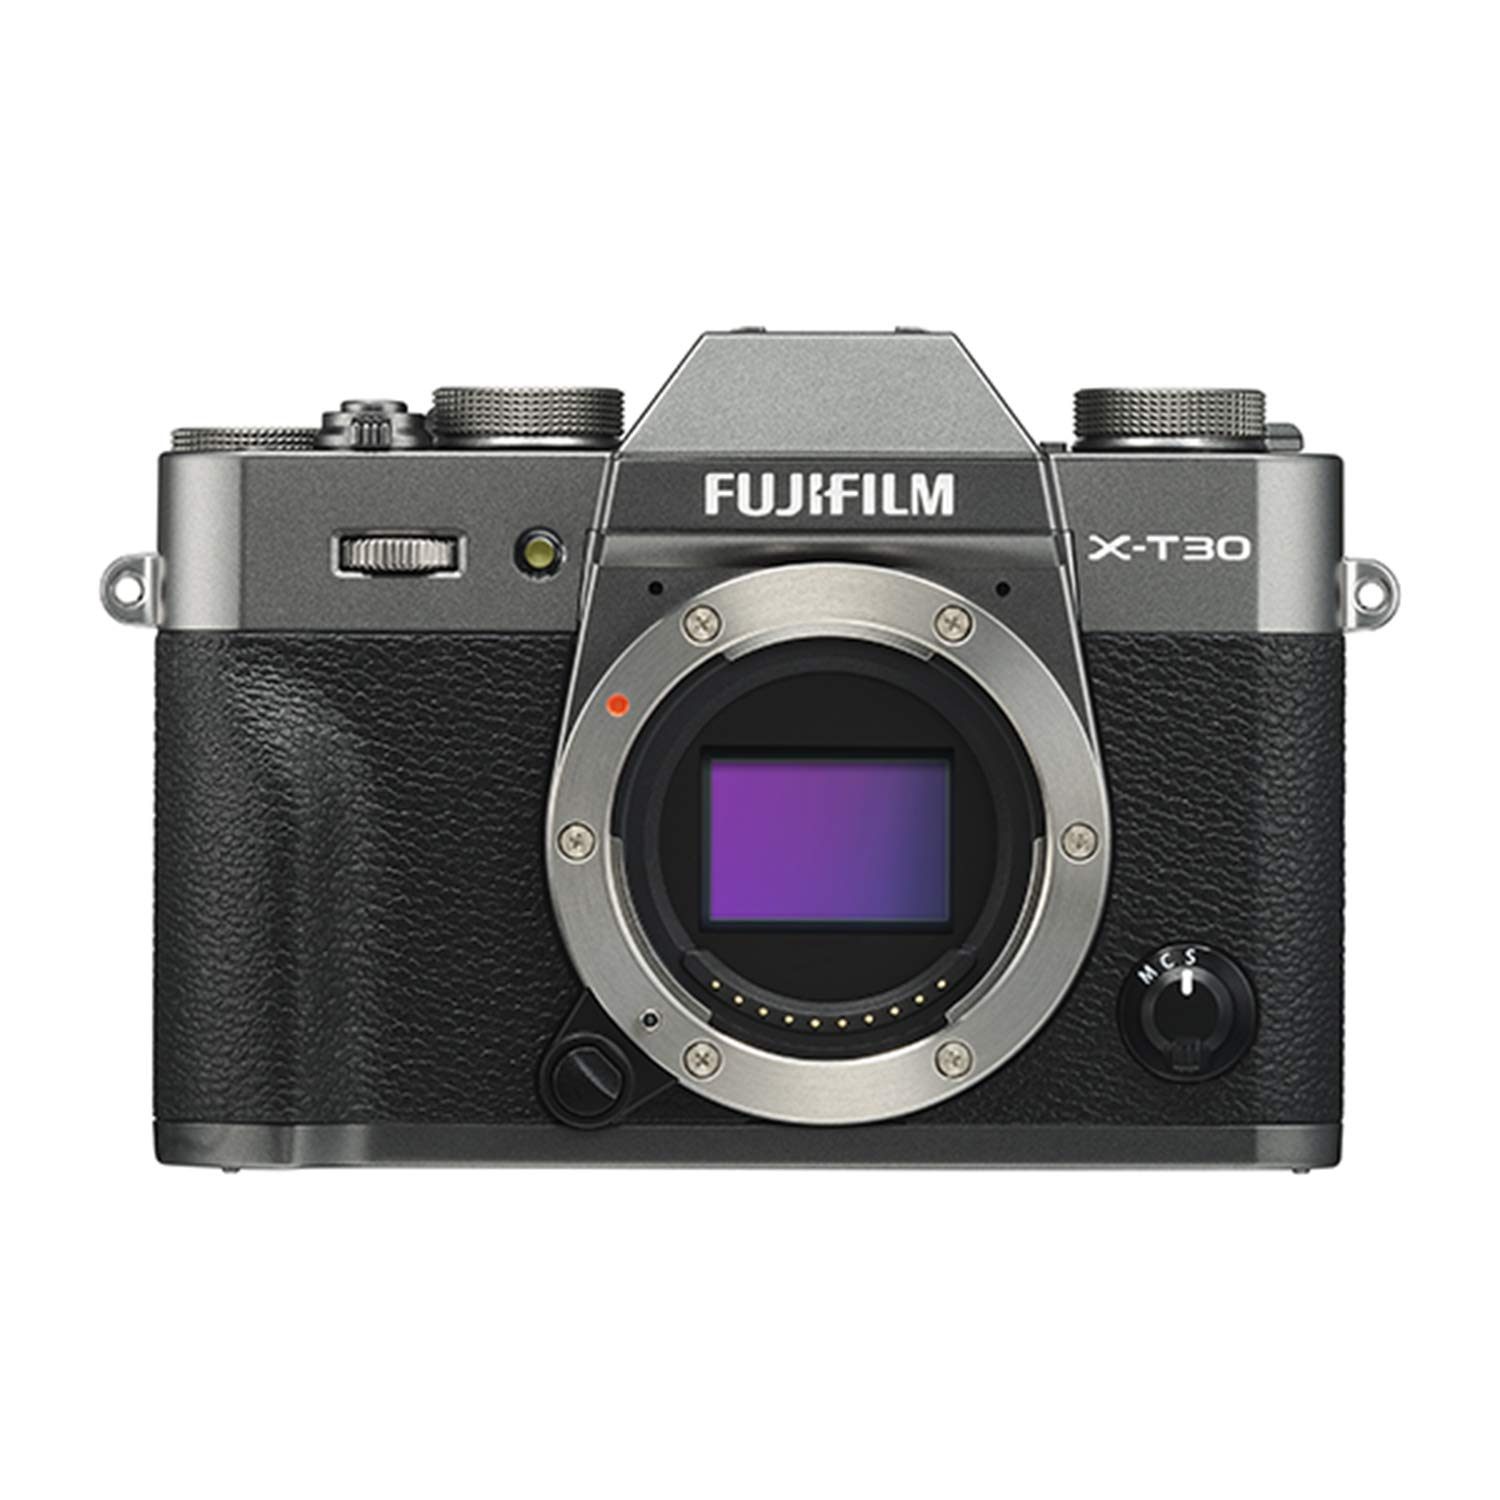 Fujifilm فوجي فيلم X-T30 كاميرا رقمية بدون مرآة - فضي ف...